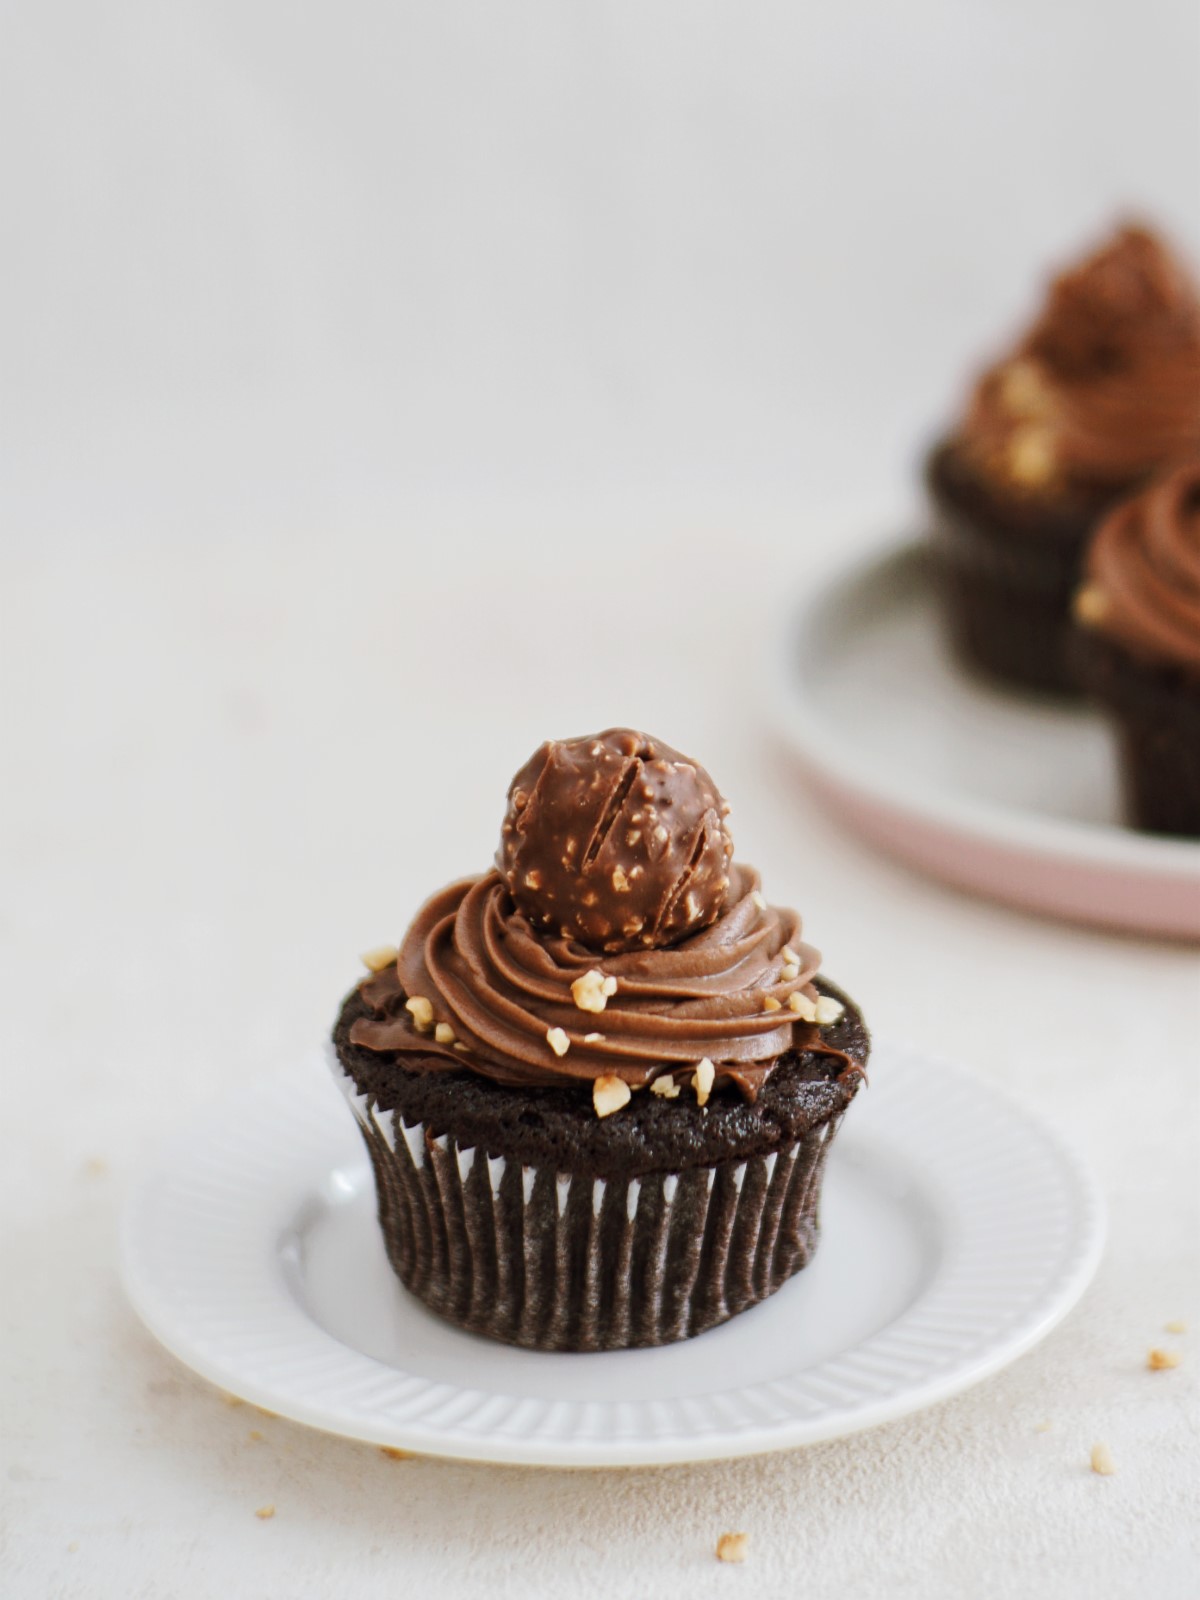 Ferrero Rocher Cupcakes - Title of the Recipe